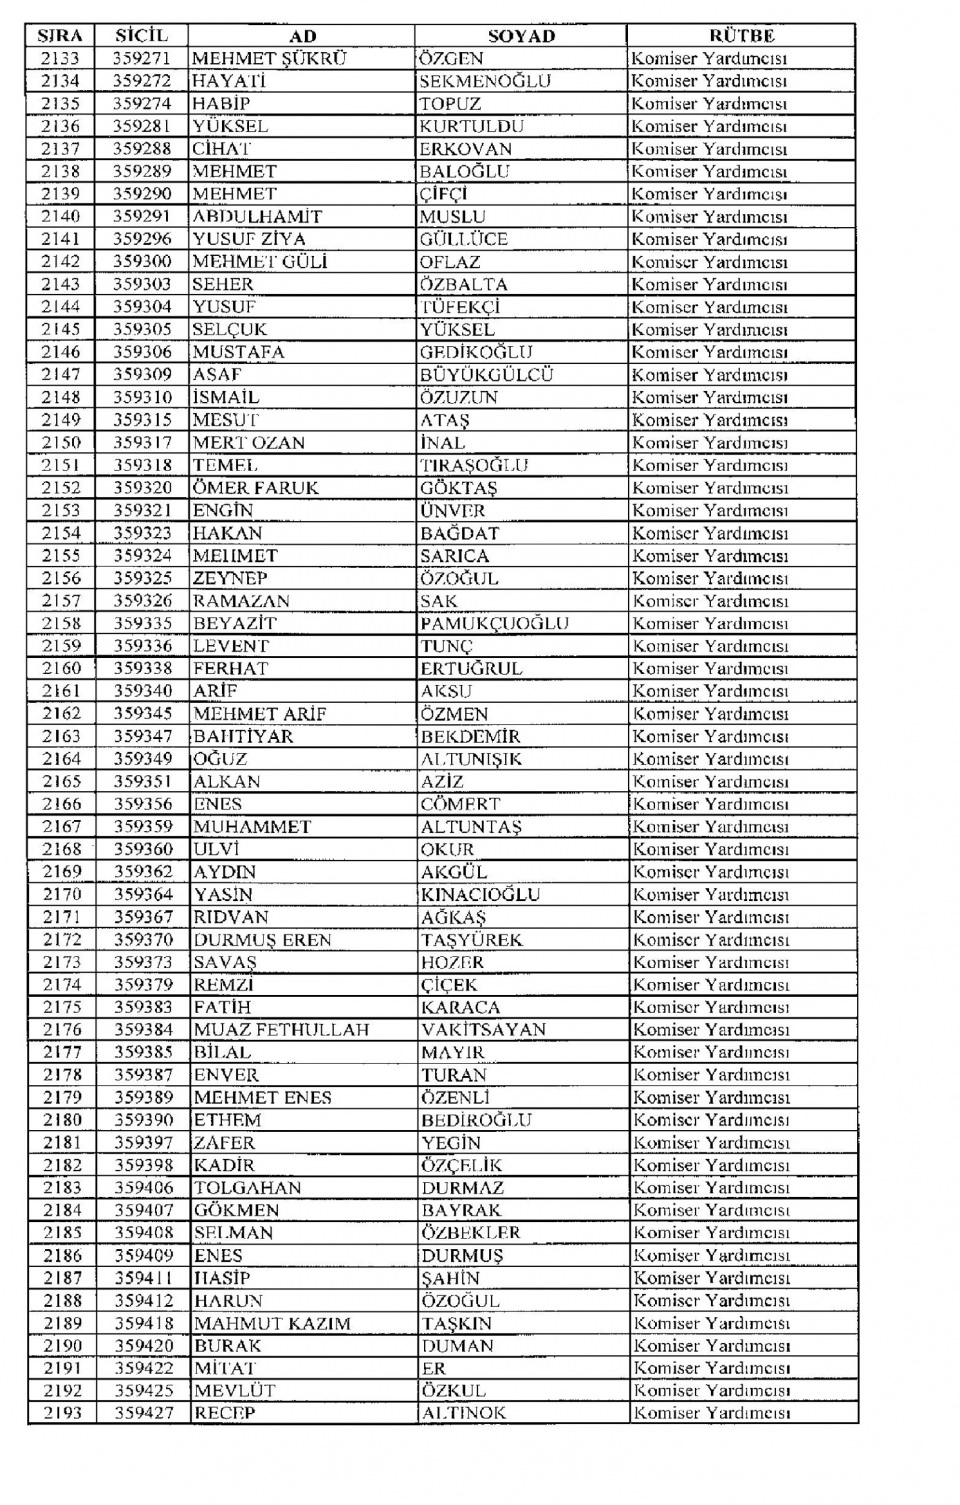 Kamudan ihraç edilenlerin isim isim listesi 88